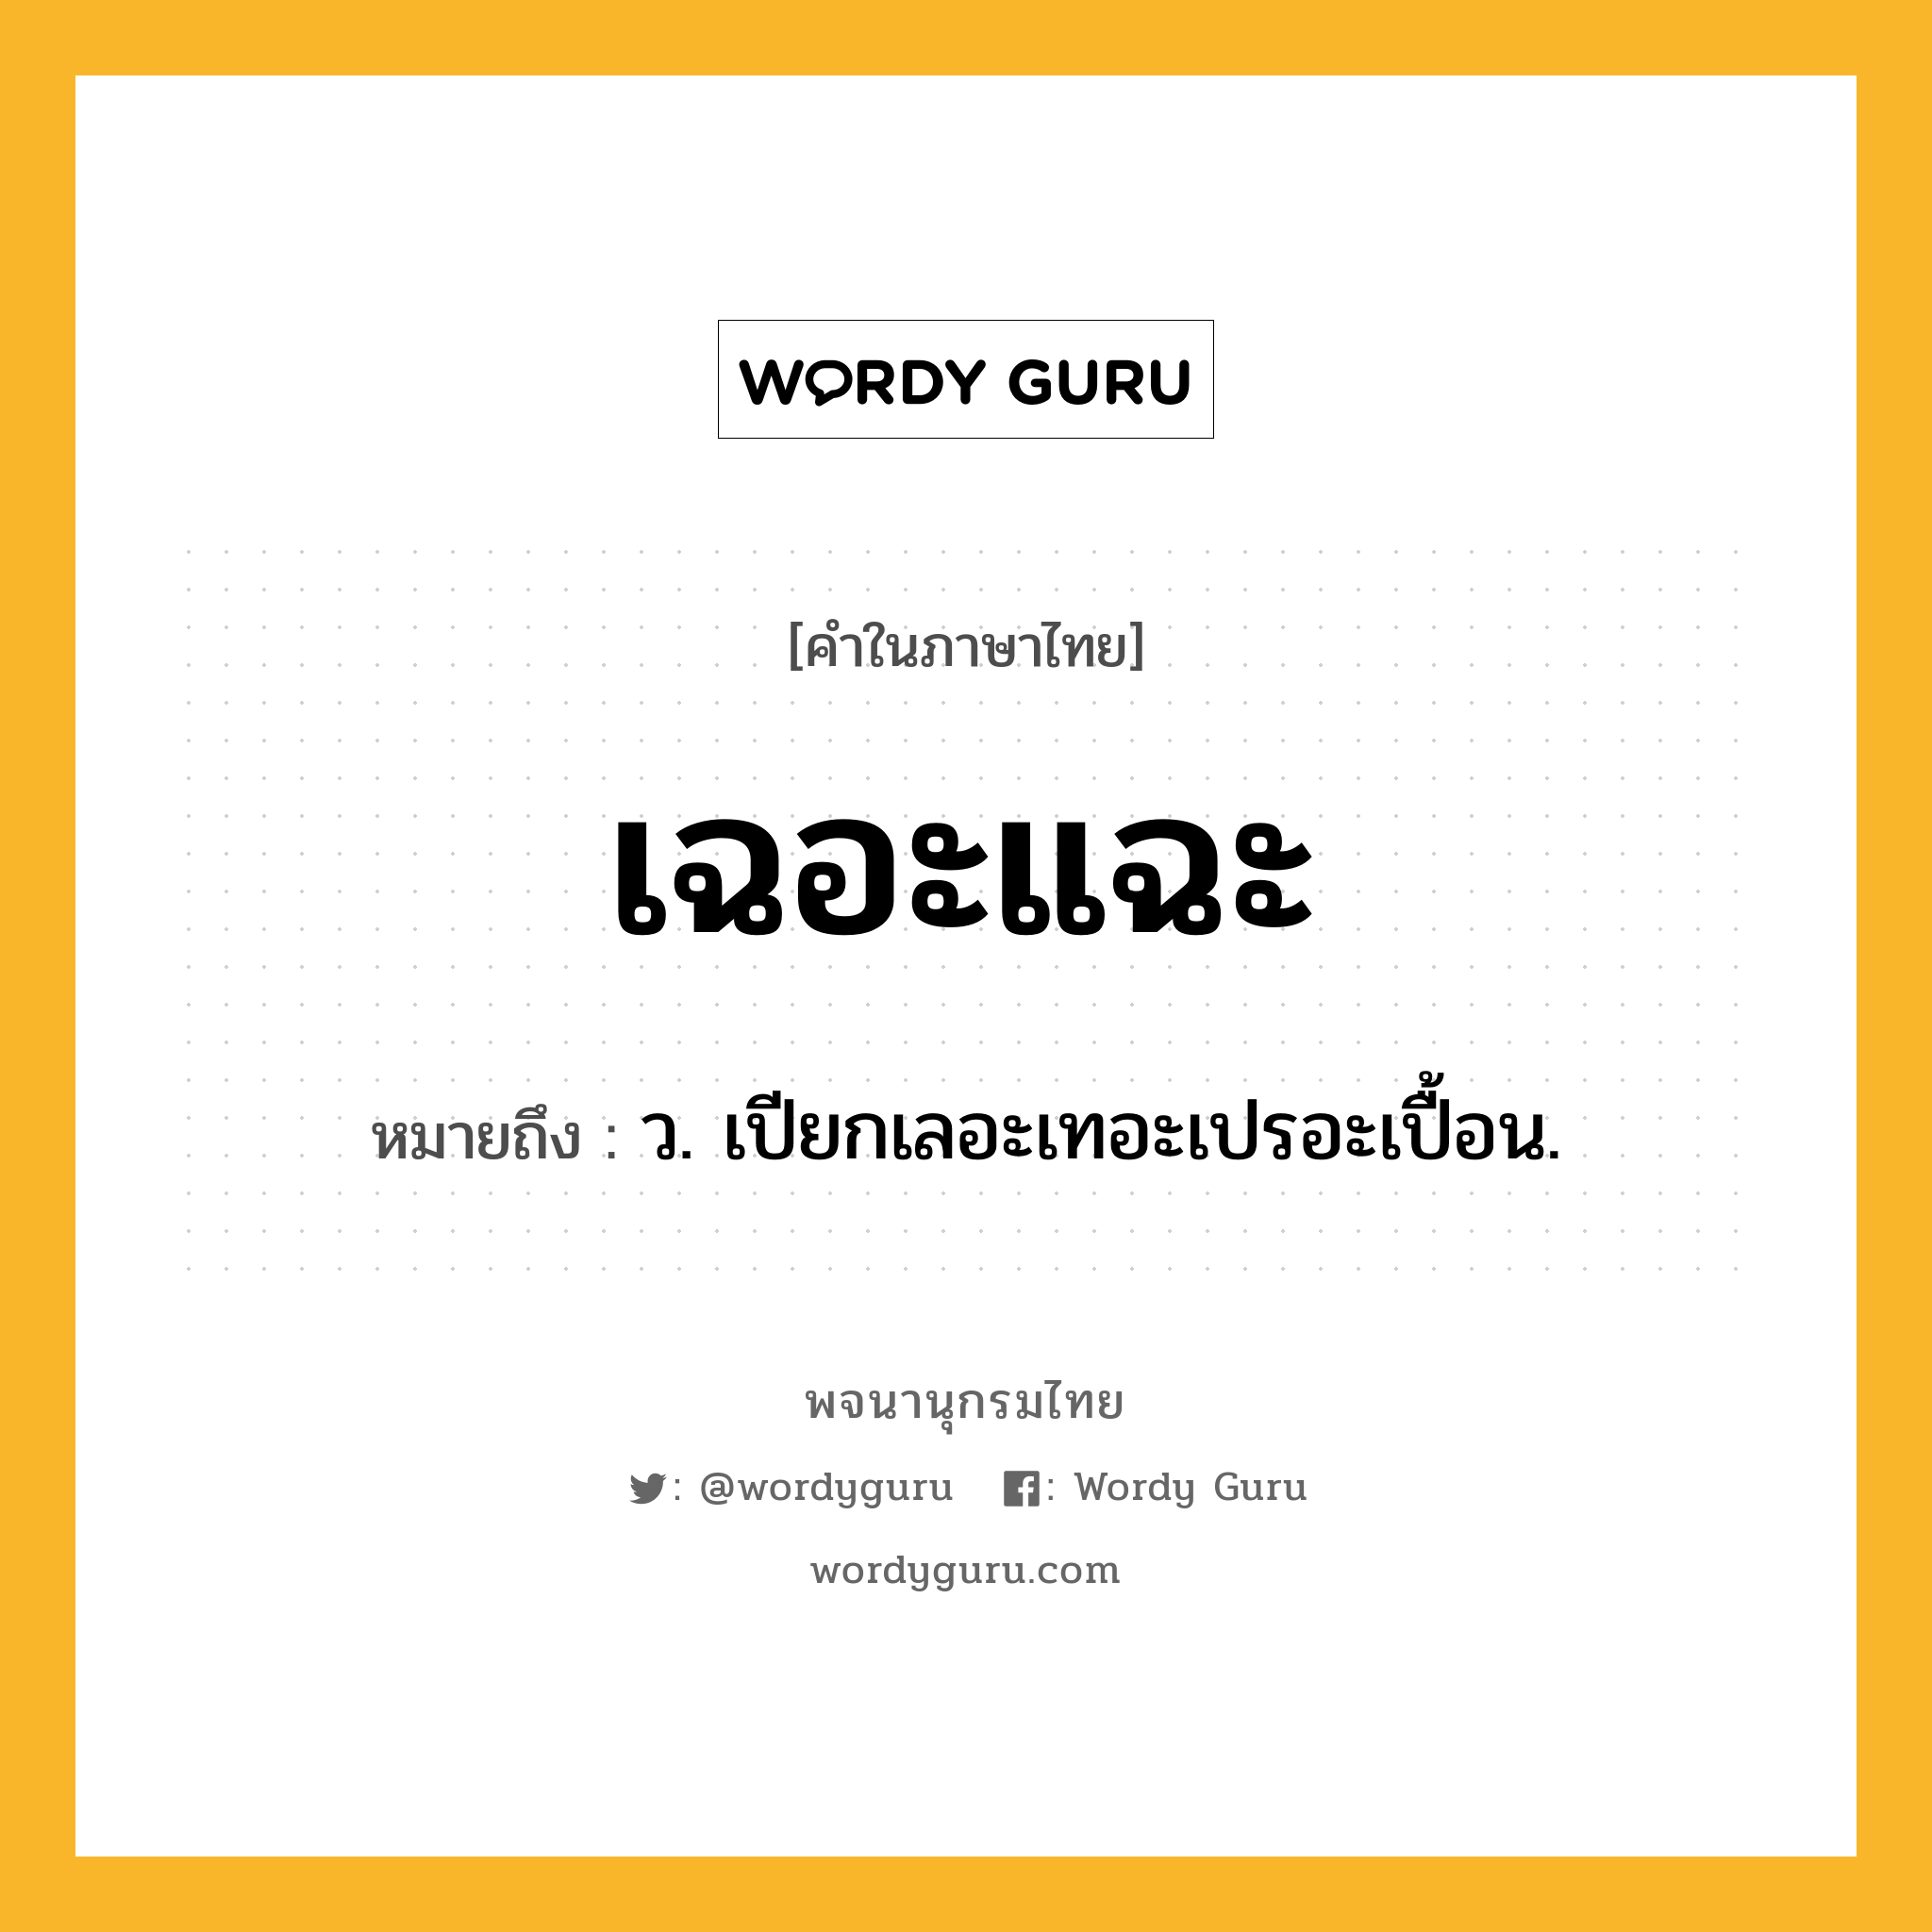 เฉอะแฉะ ความหมาย หมายถึงอะไร?, คำในภาษาไทย เฉอะแฉะ หมายถึง ว. เปียกเลอะเทอะเปรอะเปื้อน.